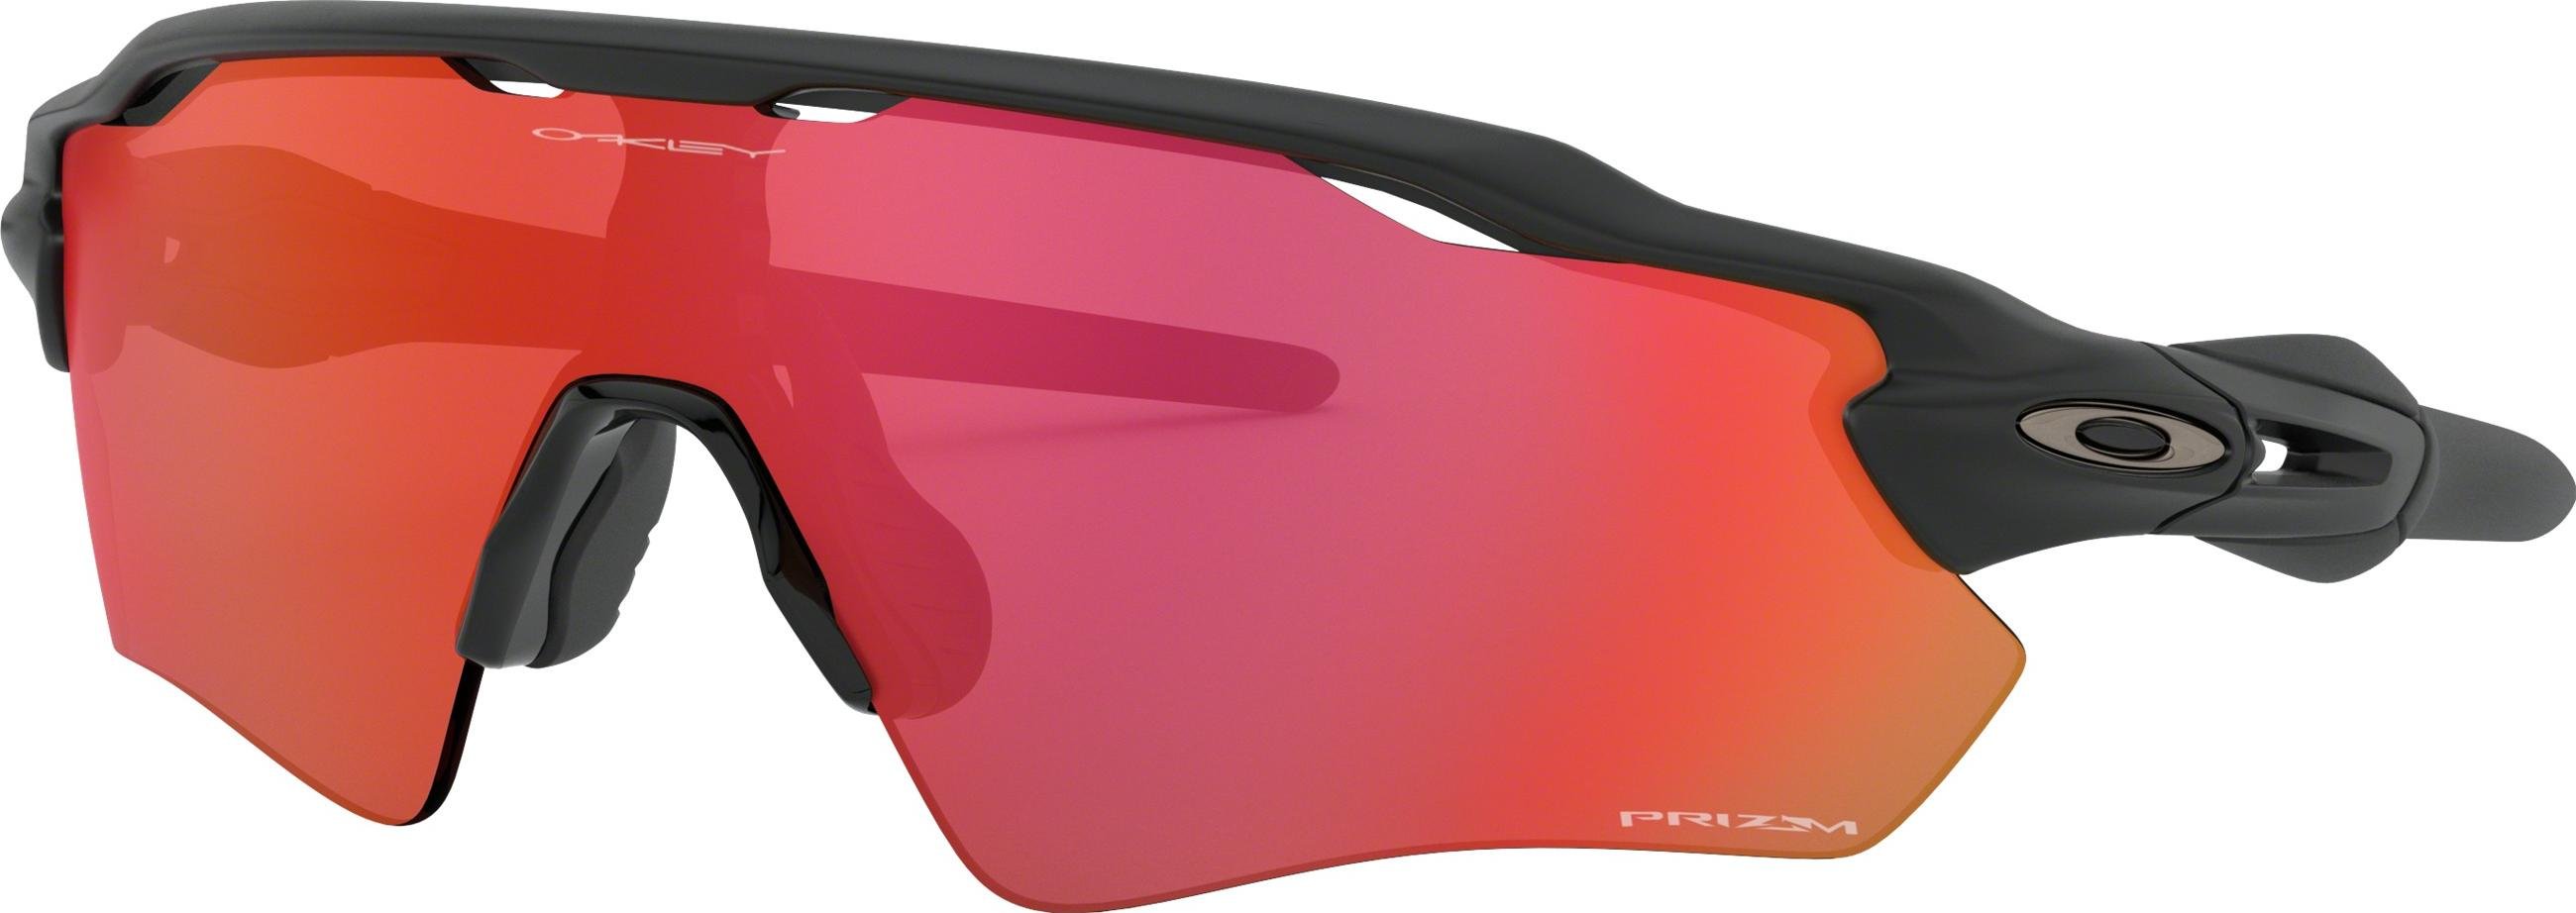 Slnečné okuliare Oakley RADAR EV PATH PRIZM